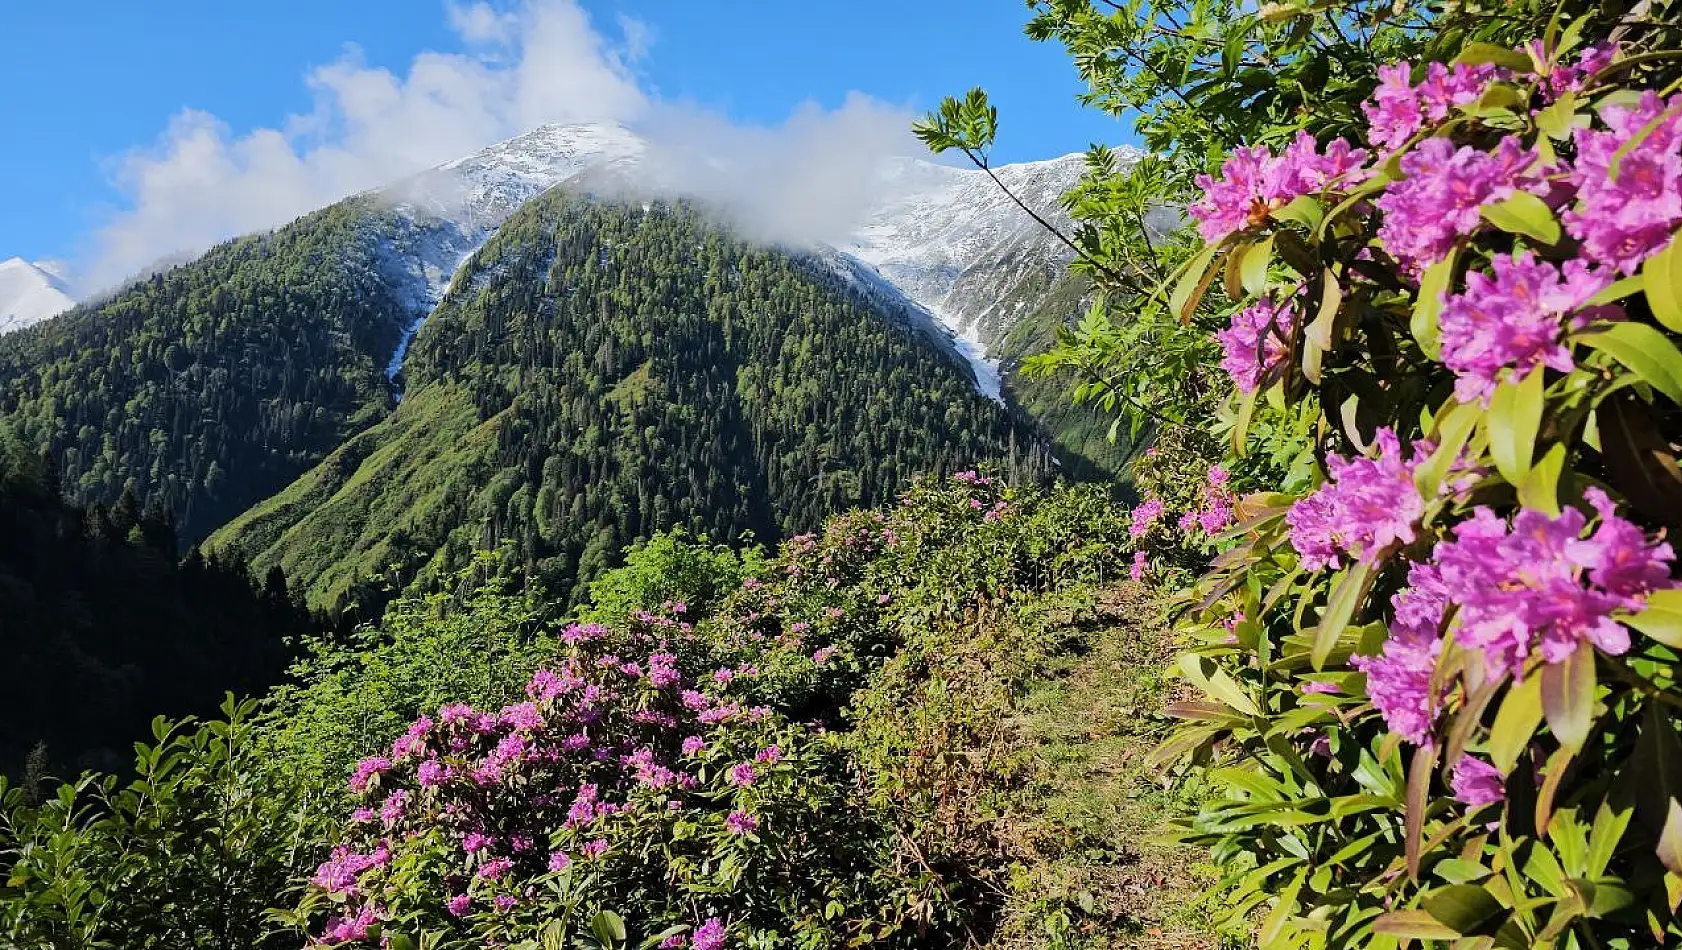 Rize'nin Kaçkar Dağları, karla kaplı zirveleriyle ve ilkbaharın renkleriyle büyülüyor